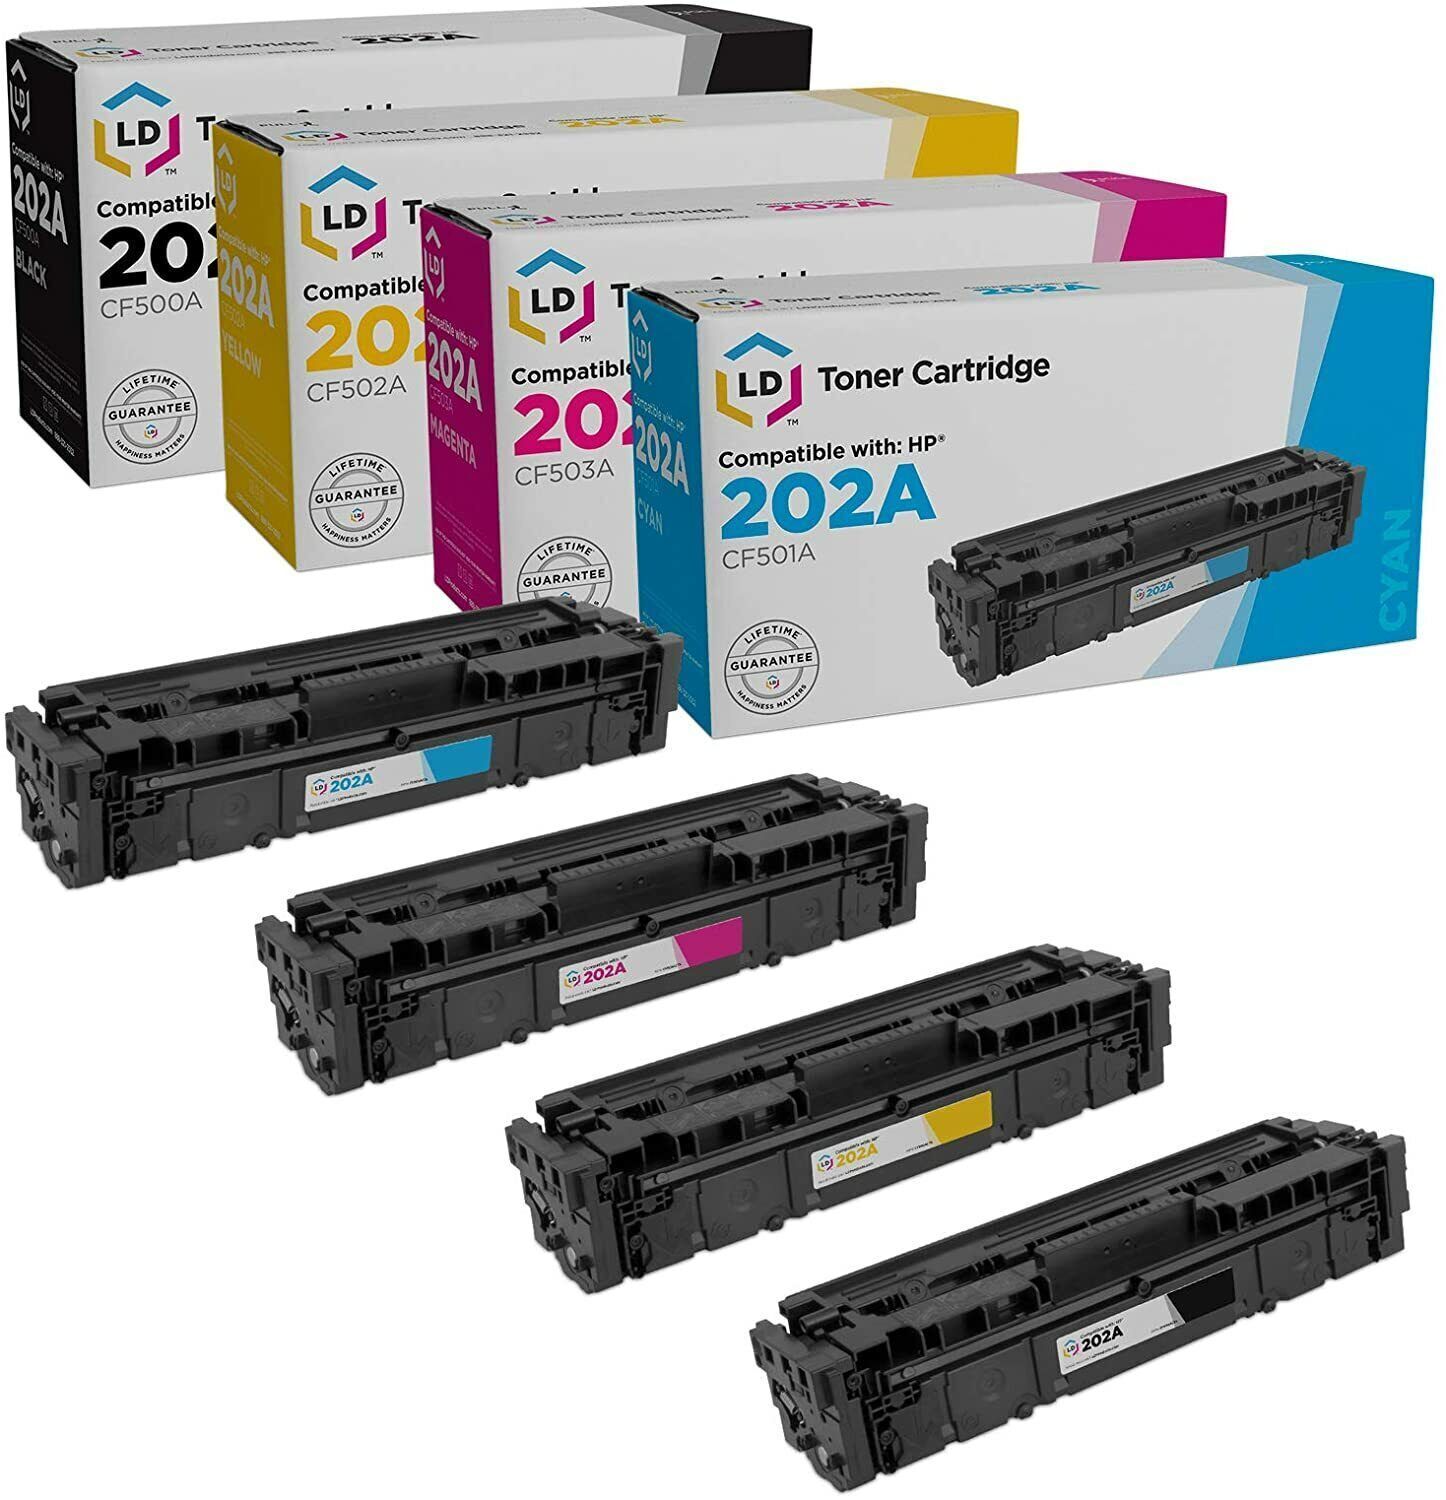 LD 4pk Comp Cartridge Fits for HP Toner 202A CF500A CF501A CF502A CF503A M254dw